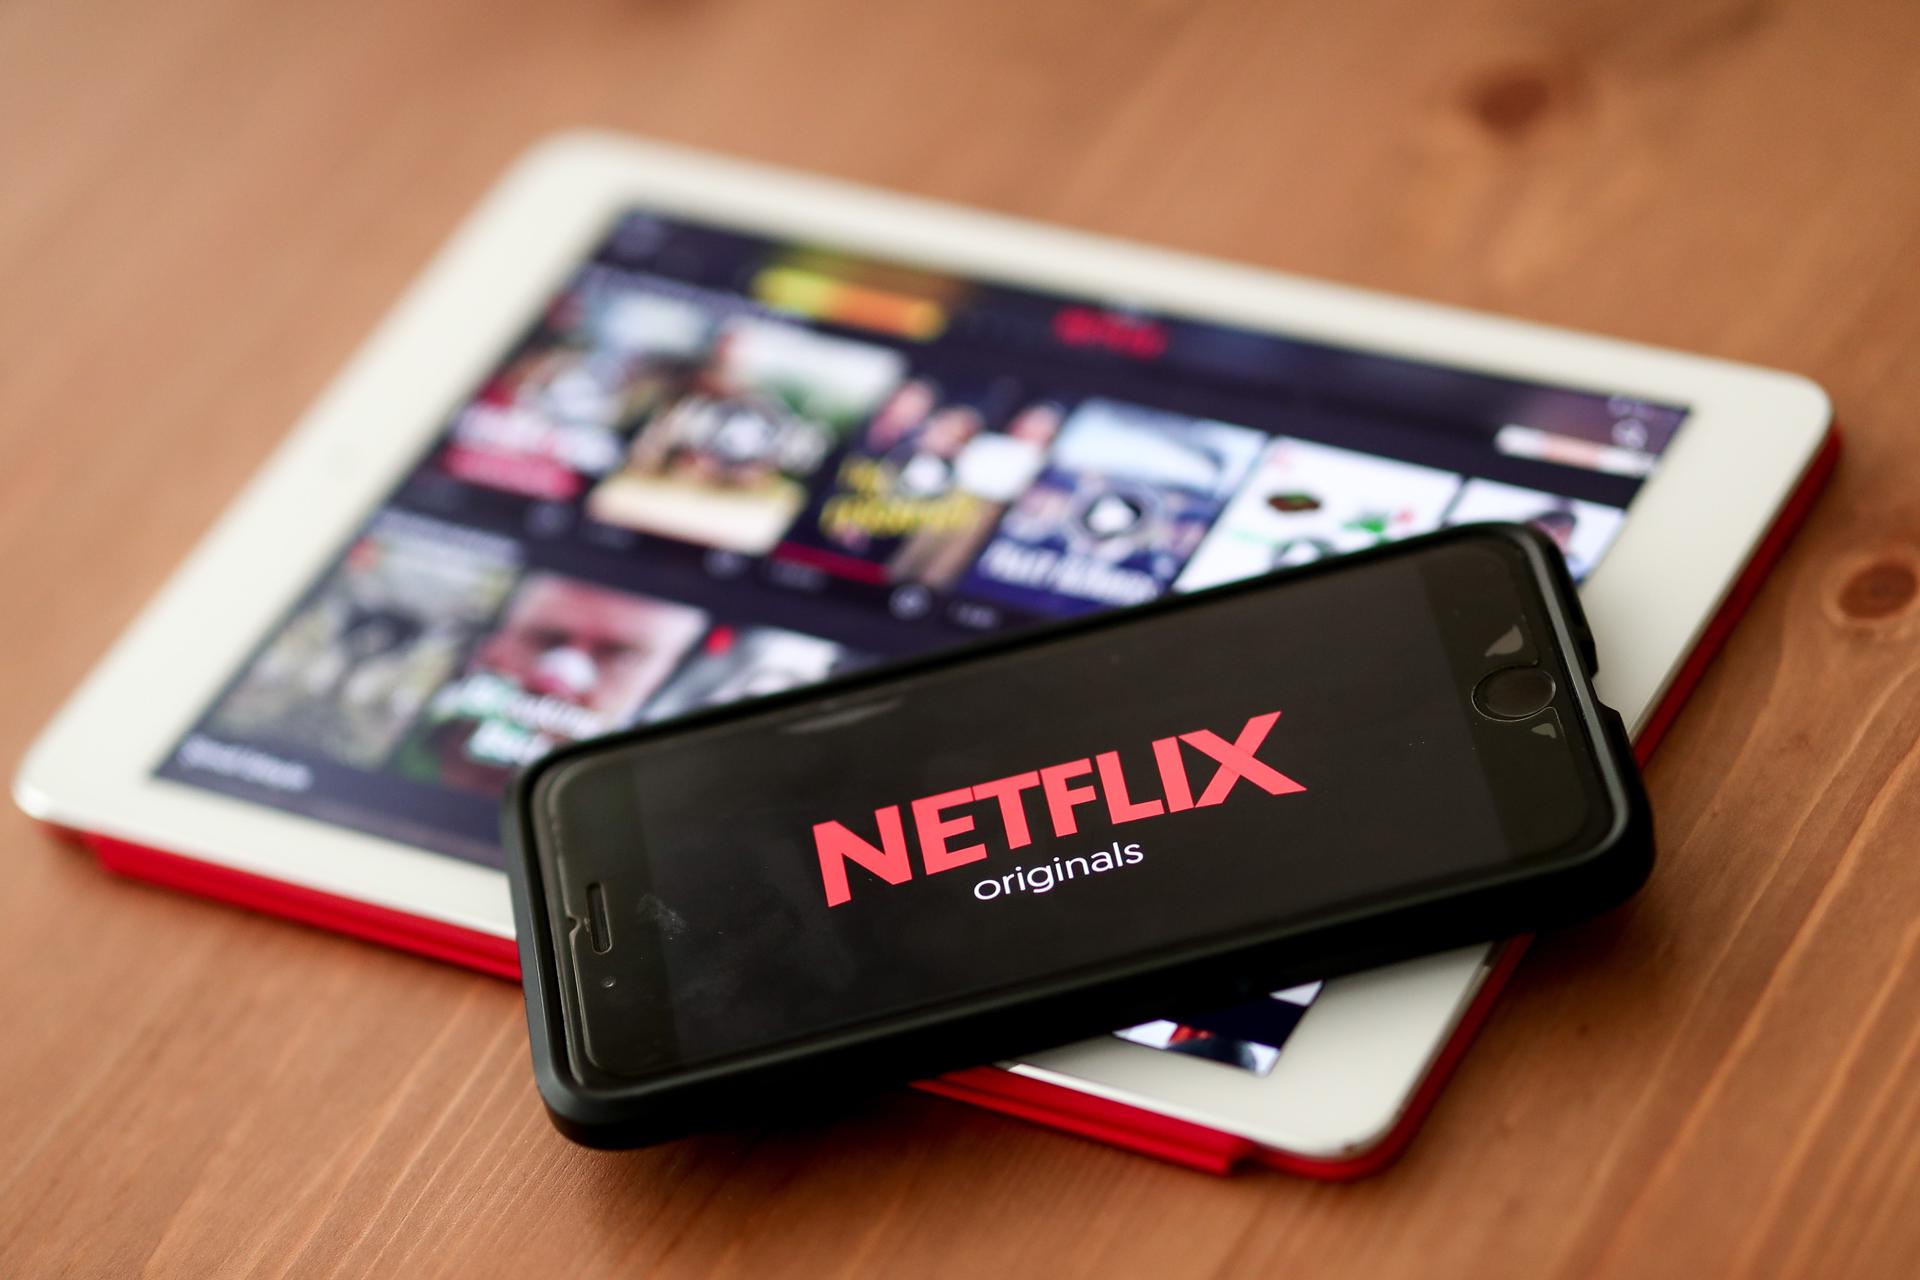 Vista del logo de Netflix en un teléfono móvil, en una fotografía de archivo. EFE/Sedat Suna